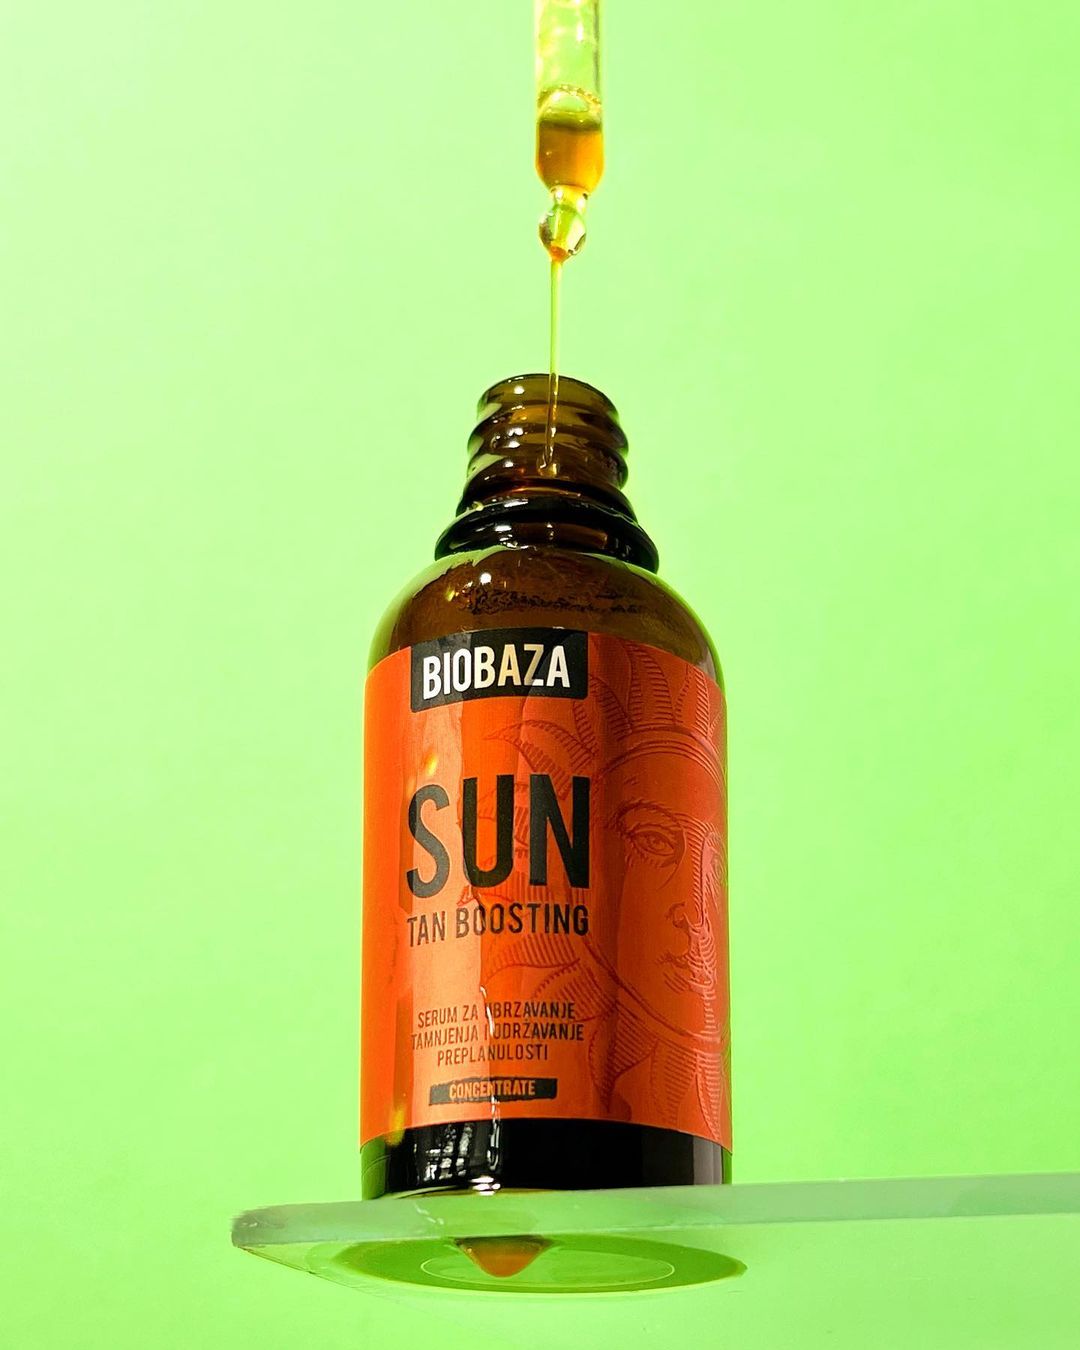 Serum pentru accelerarea si mentinerea bronzului, SUN, Biobaza, 50 ml